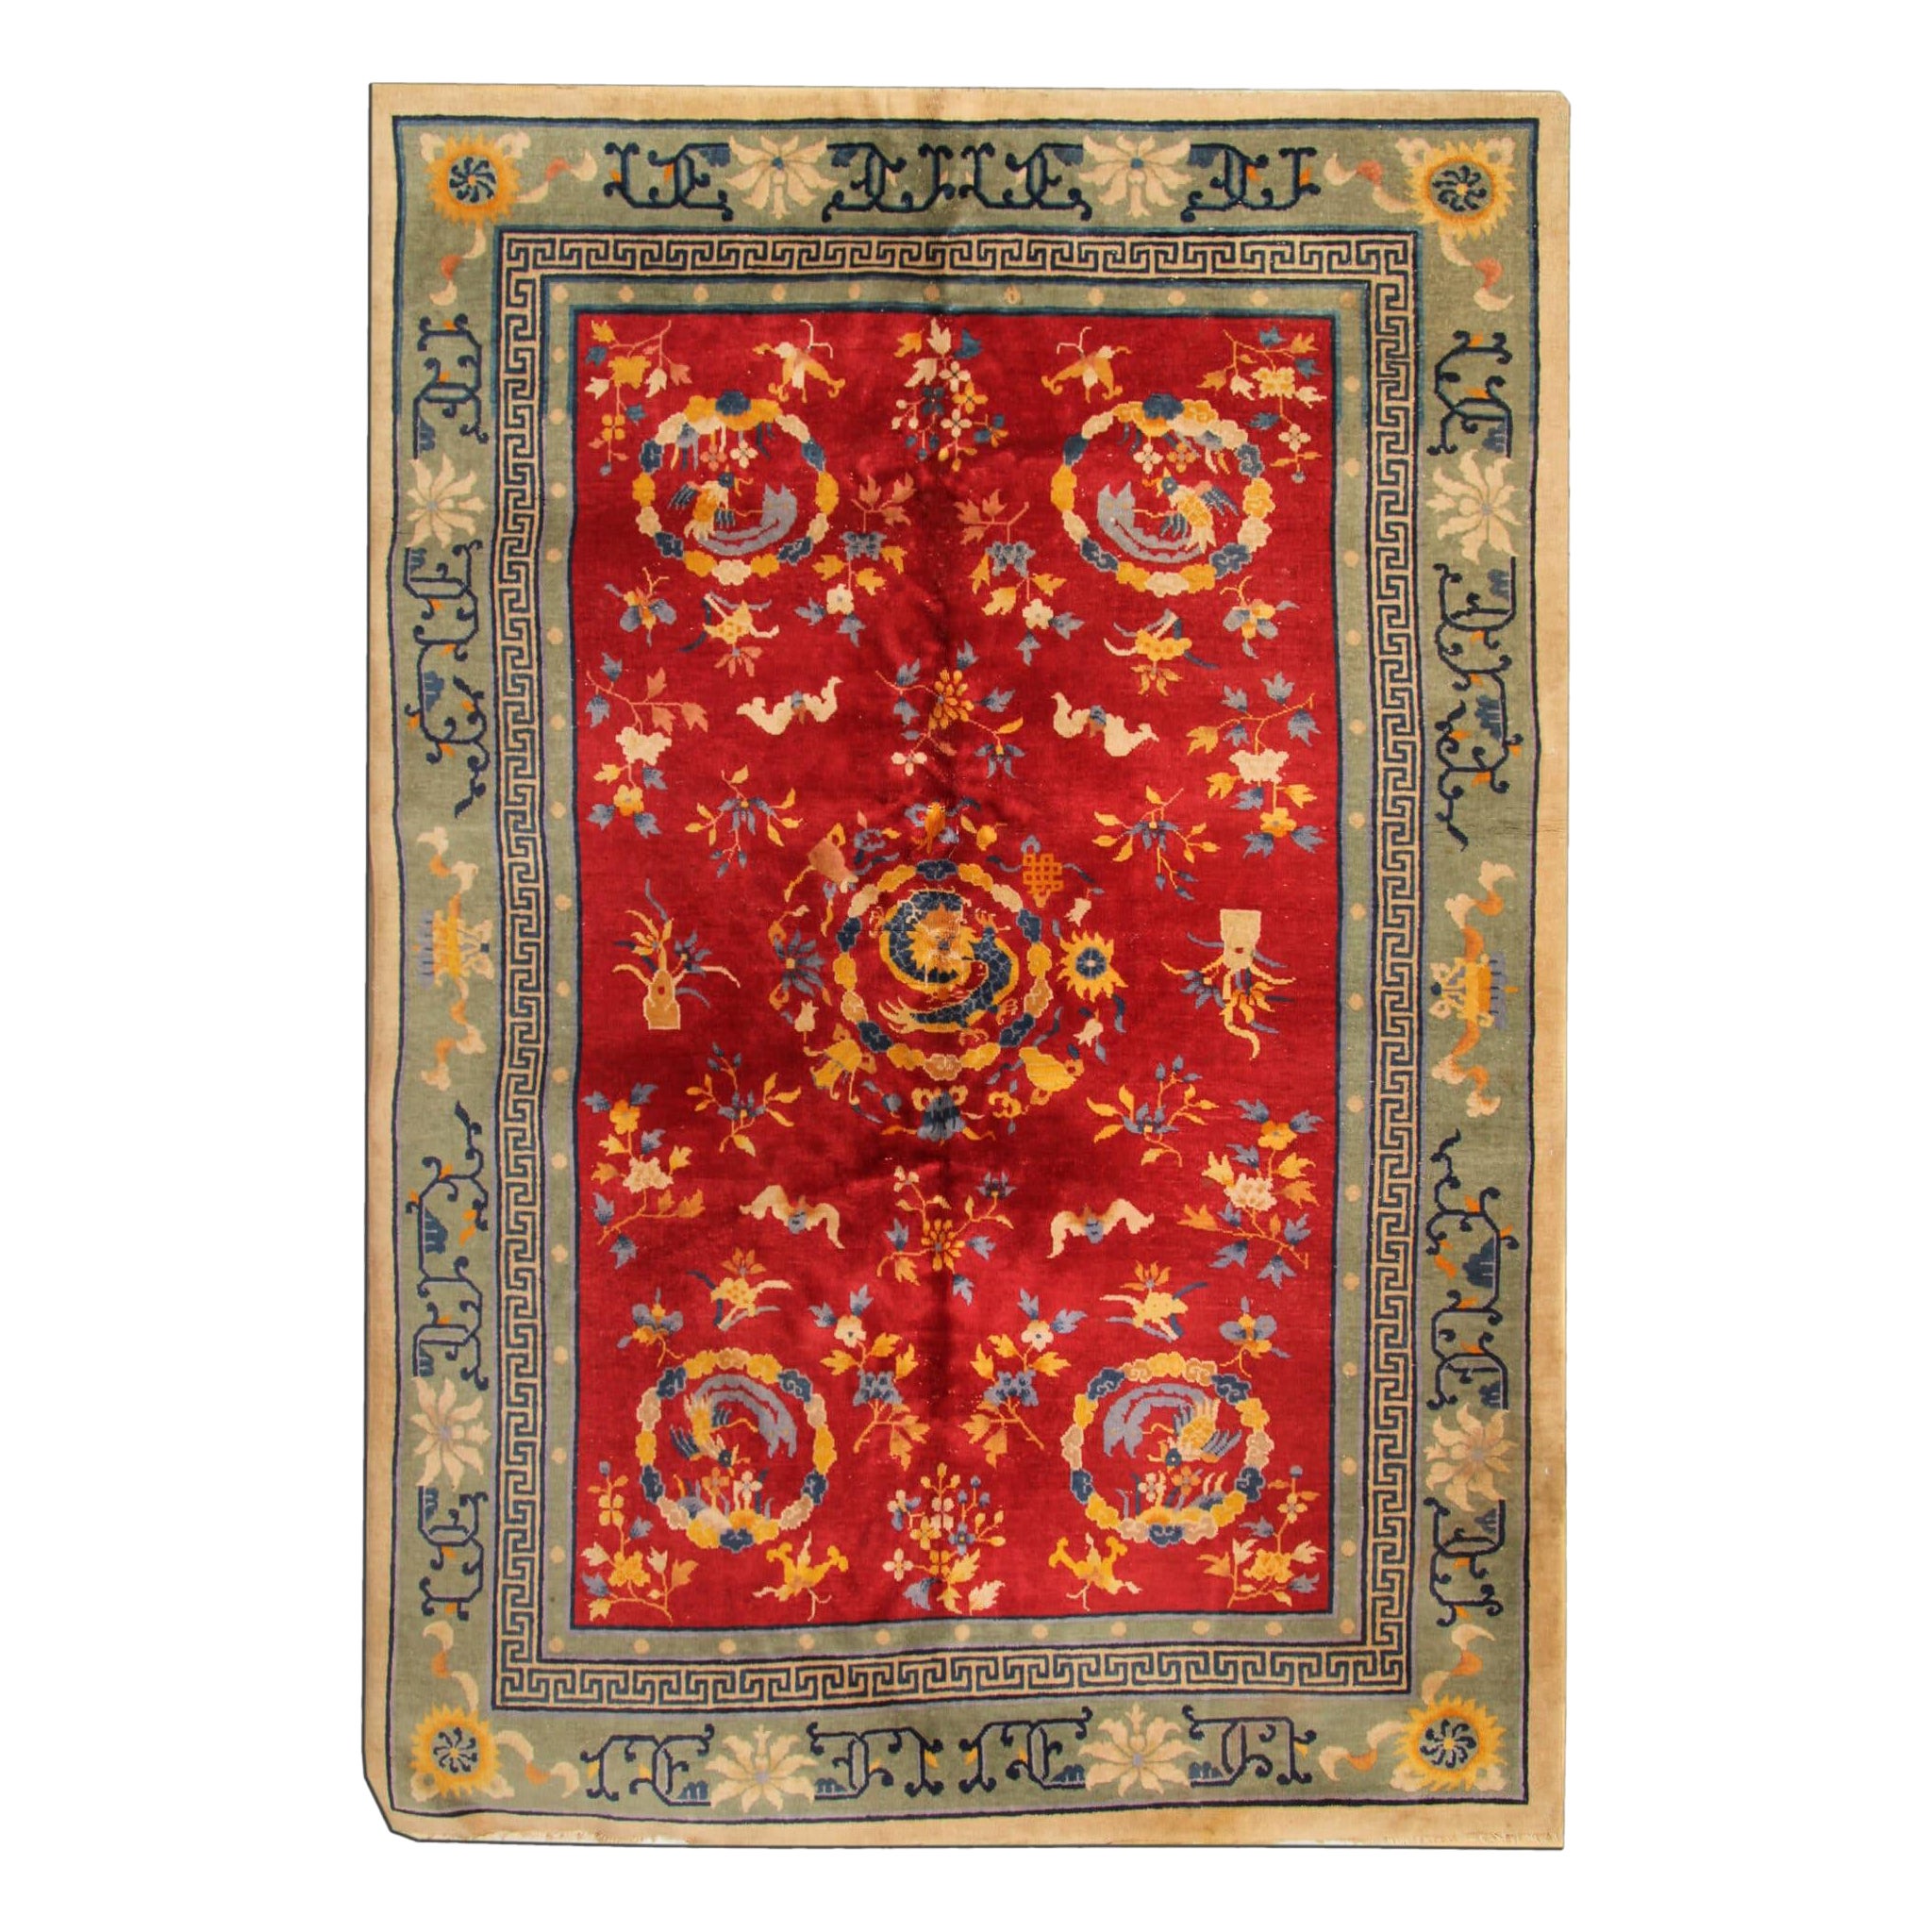 Roter antiker Teppich, Art Deco Vintage Teppich Orientalische handgefertigte Teppiche Chinesische Teppiche